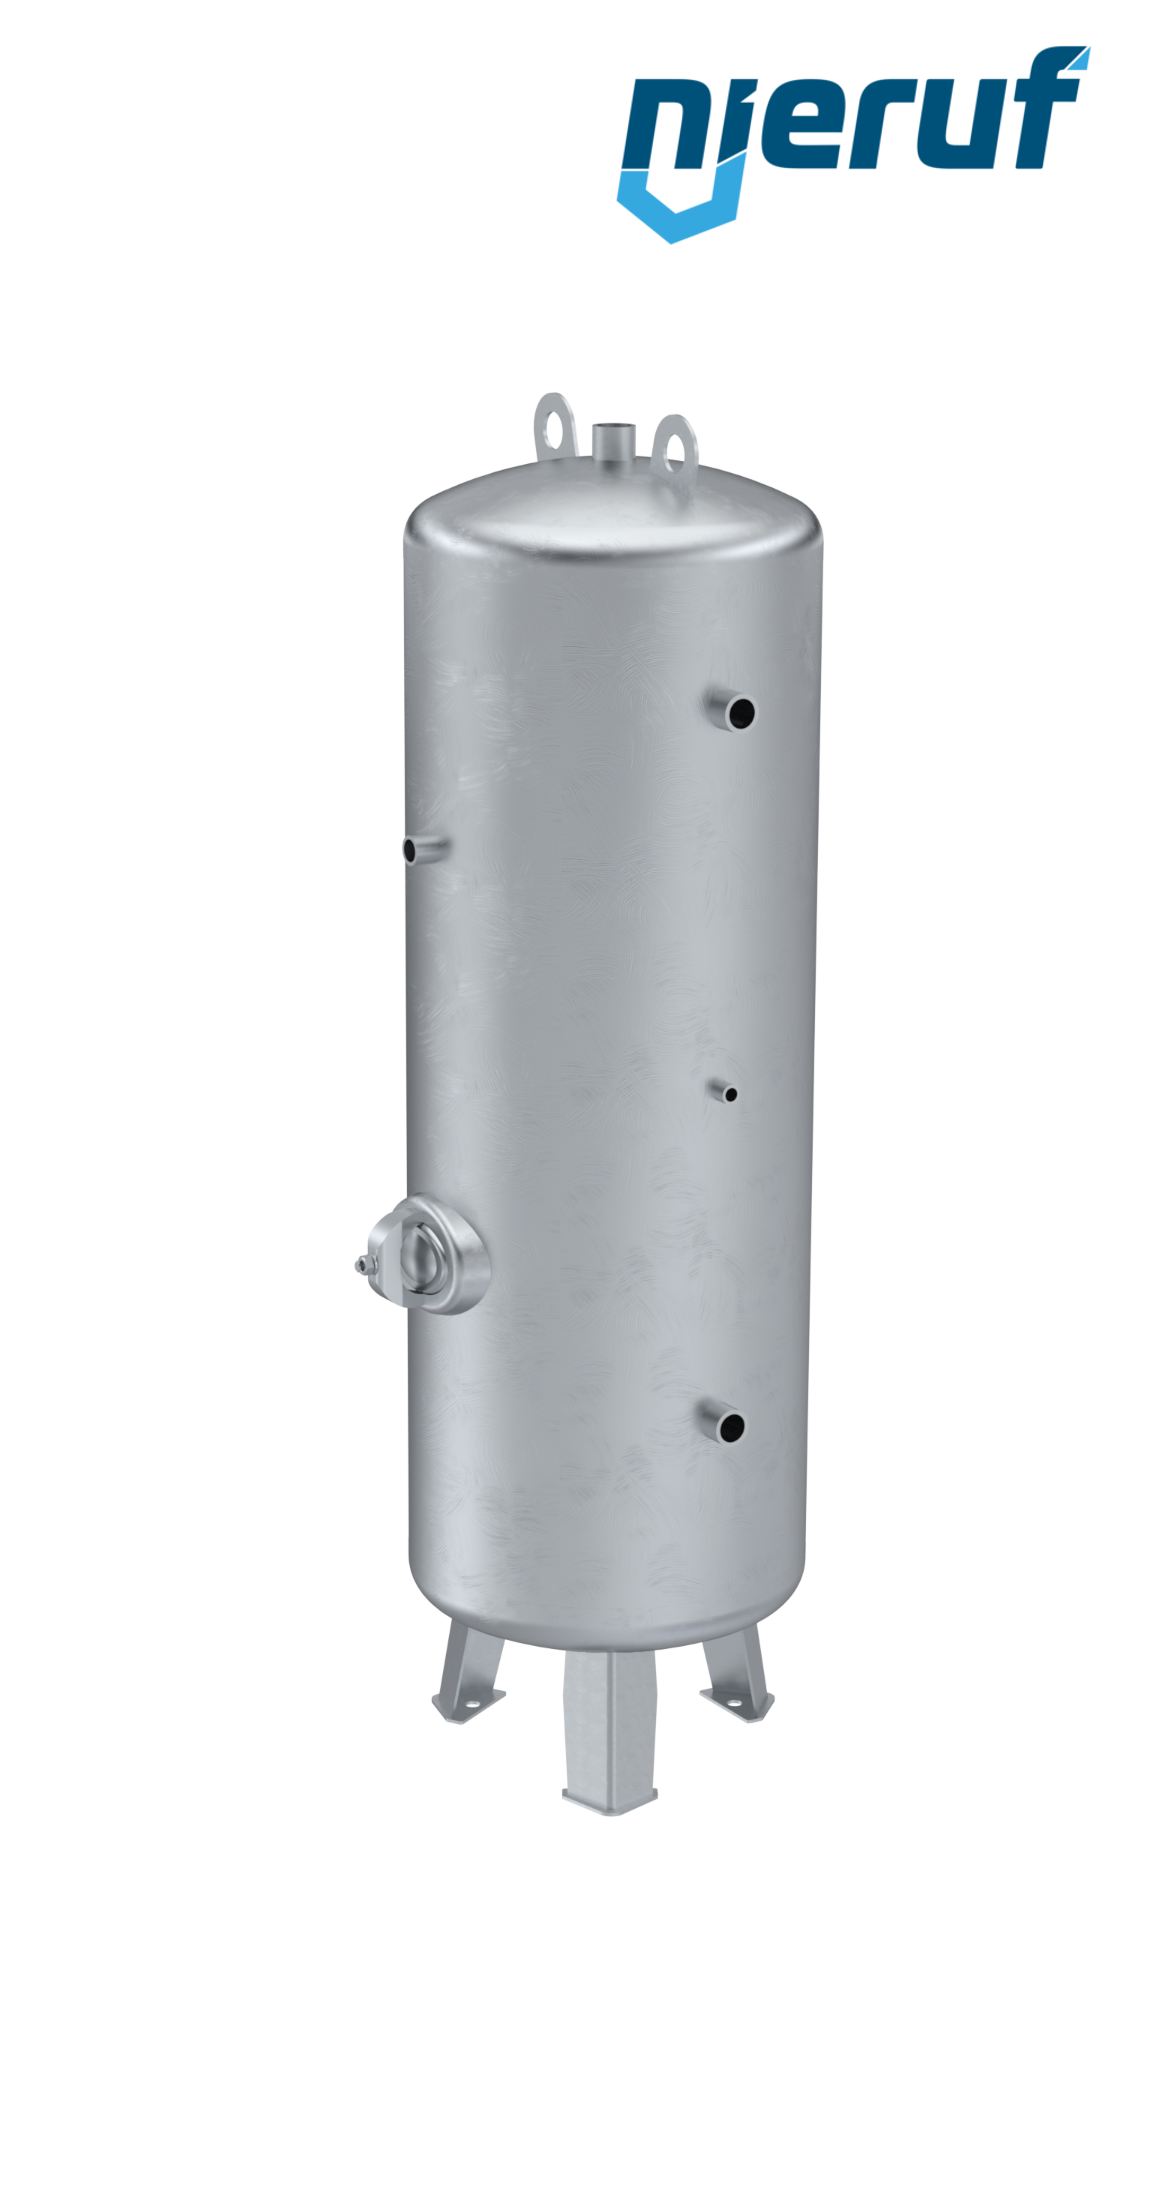 Serbatoio a pressione verticale BE01 500 litri, 0-11 bar, acciaio zincato